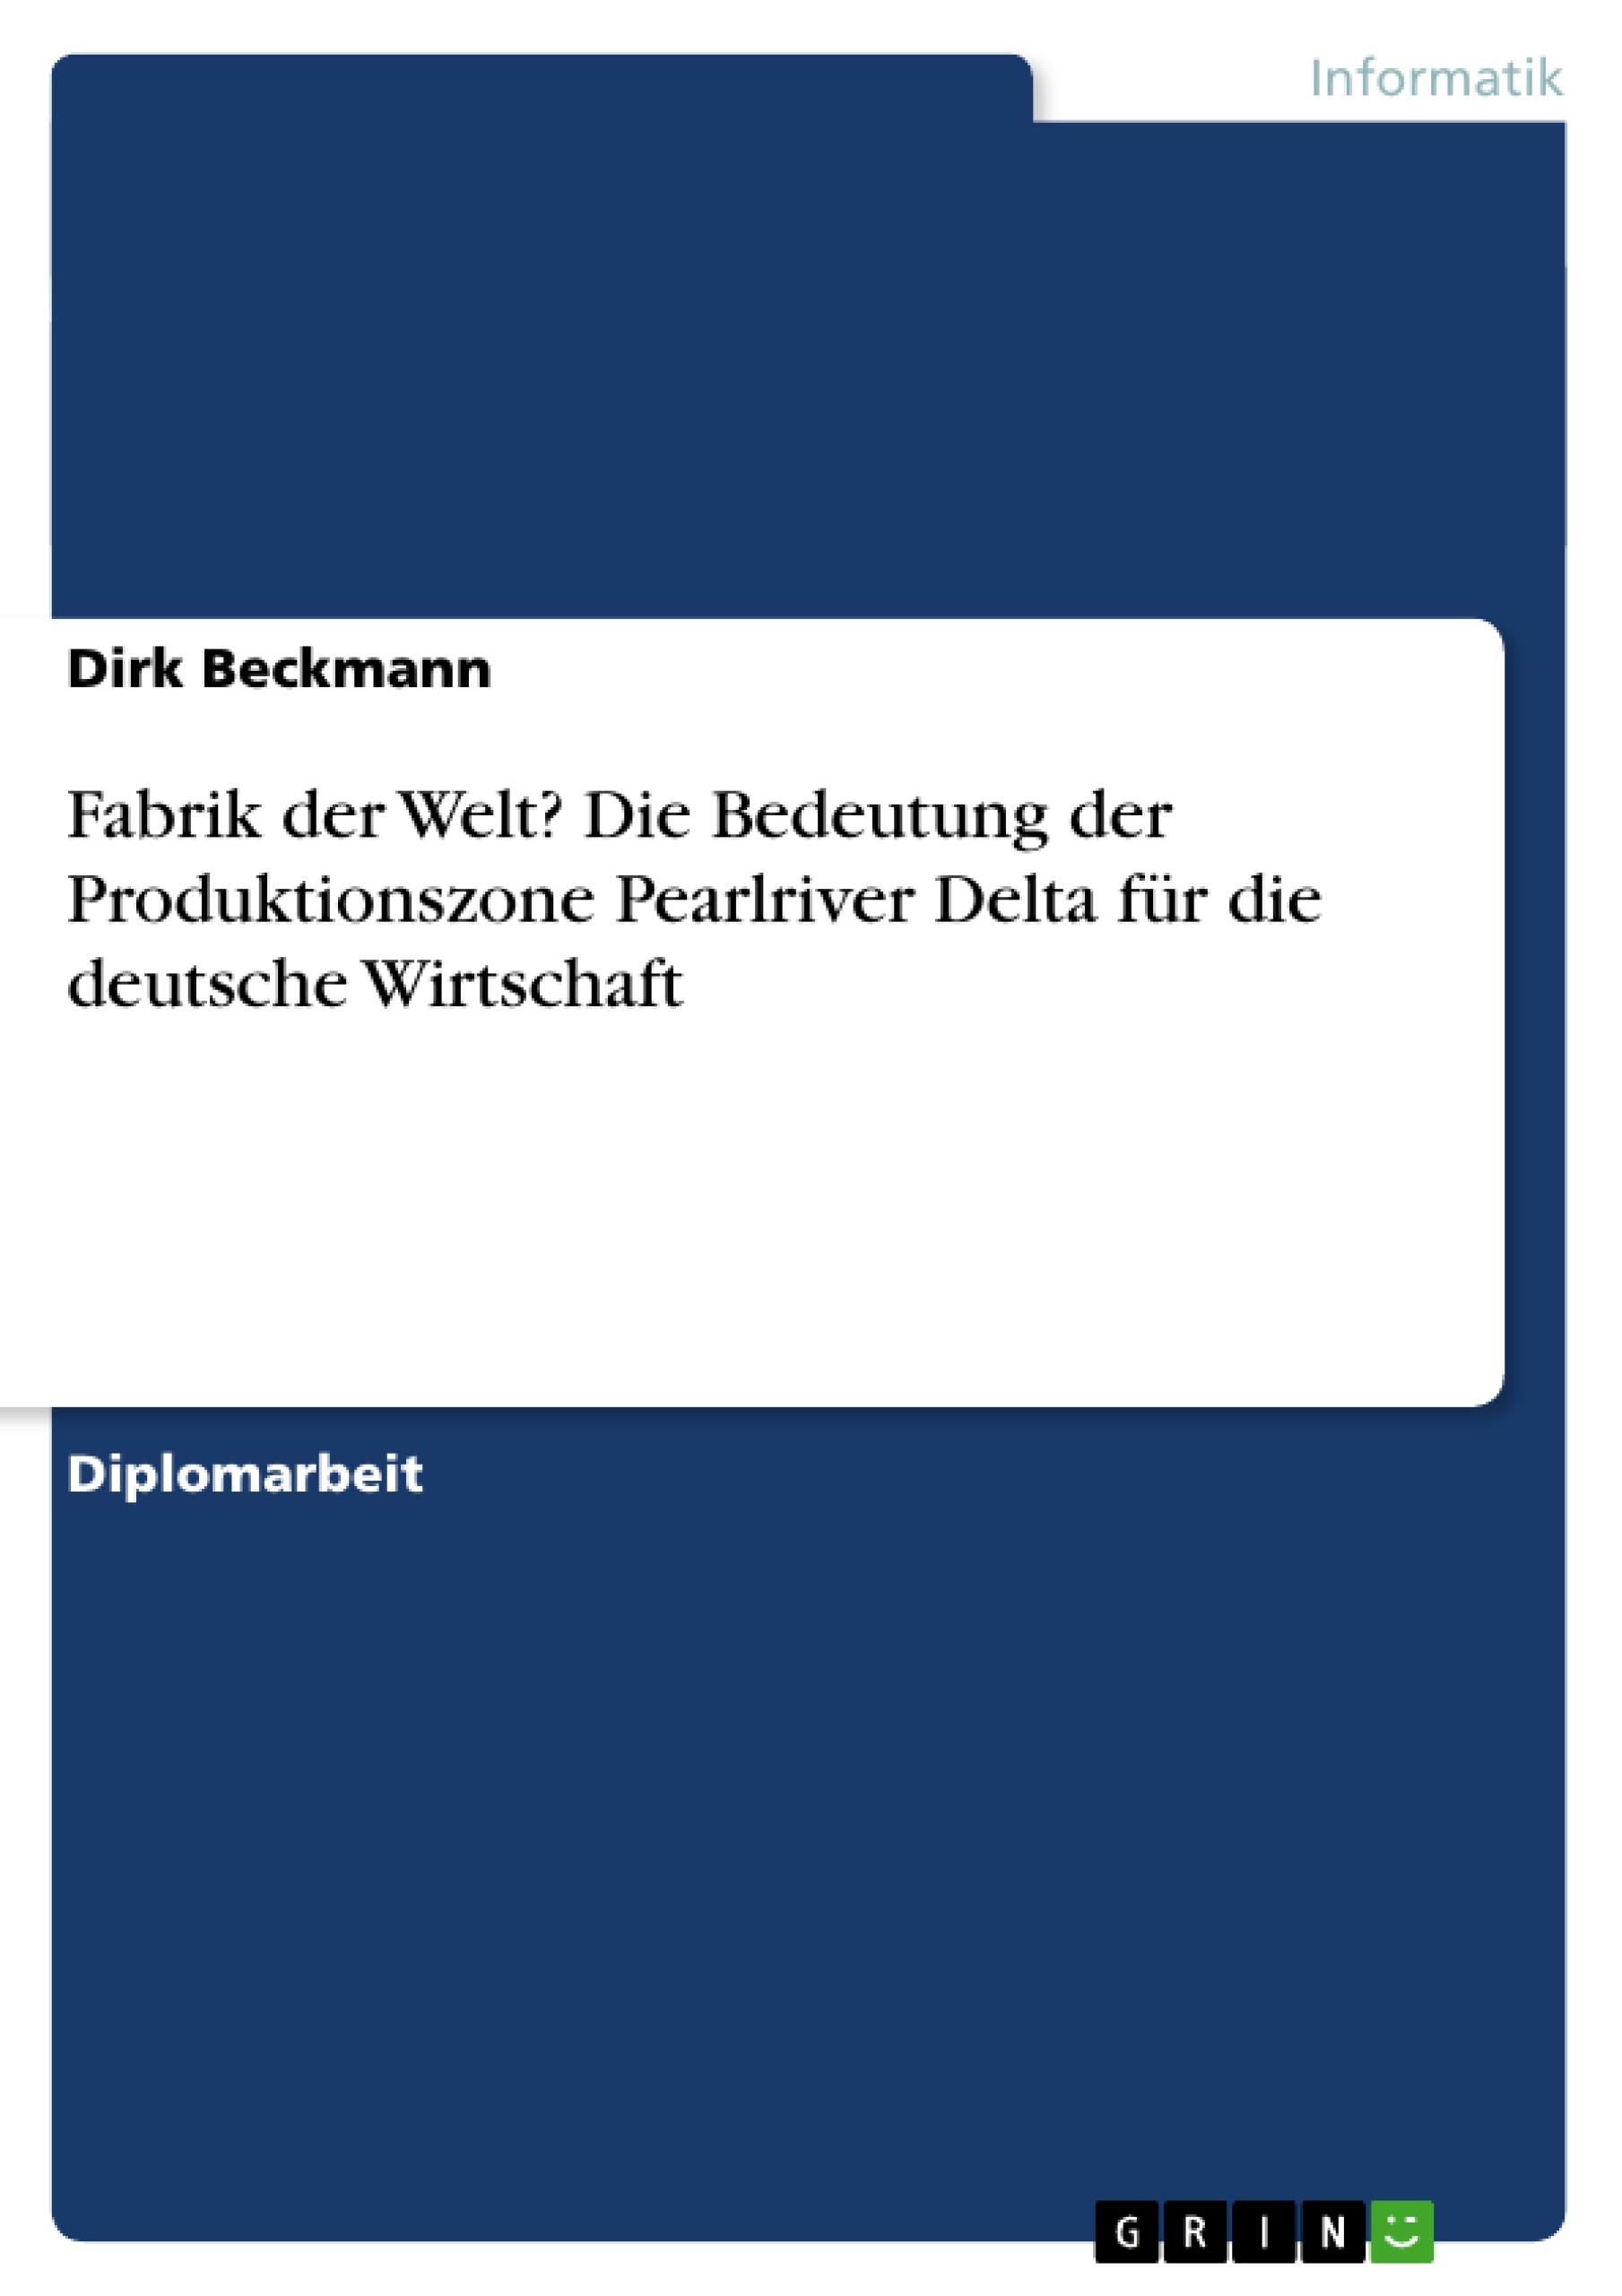 Título: Fabrik der Welt? Die Bedeutung der Produktionszone Pearlriver Delta für die deutsche Wirtschaft